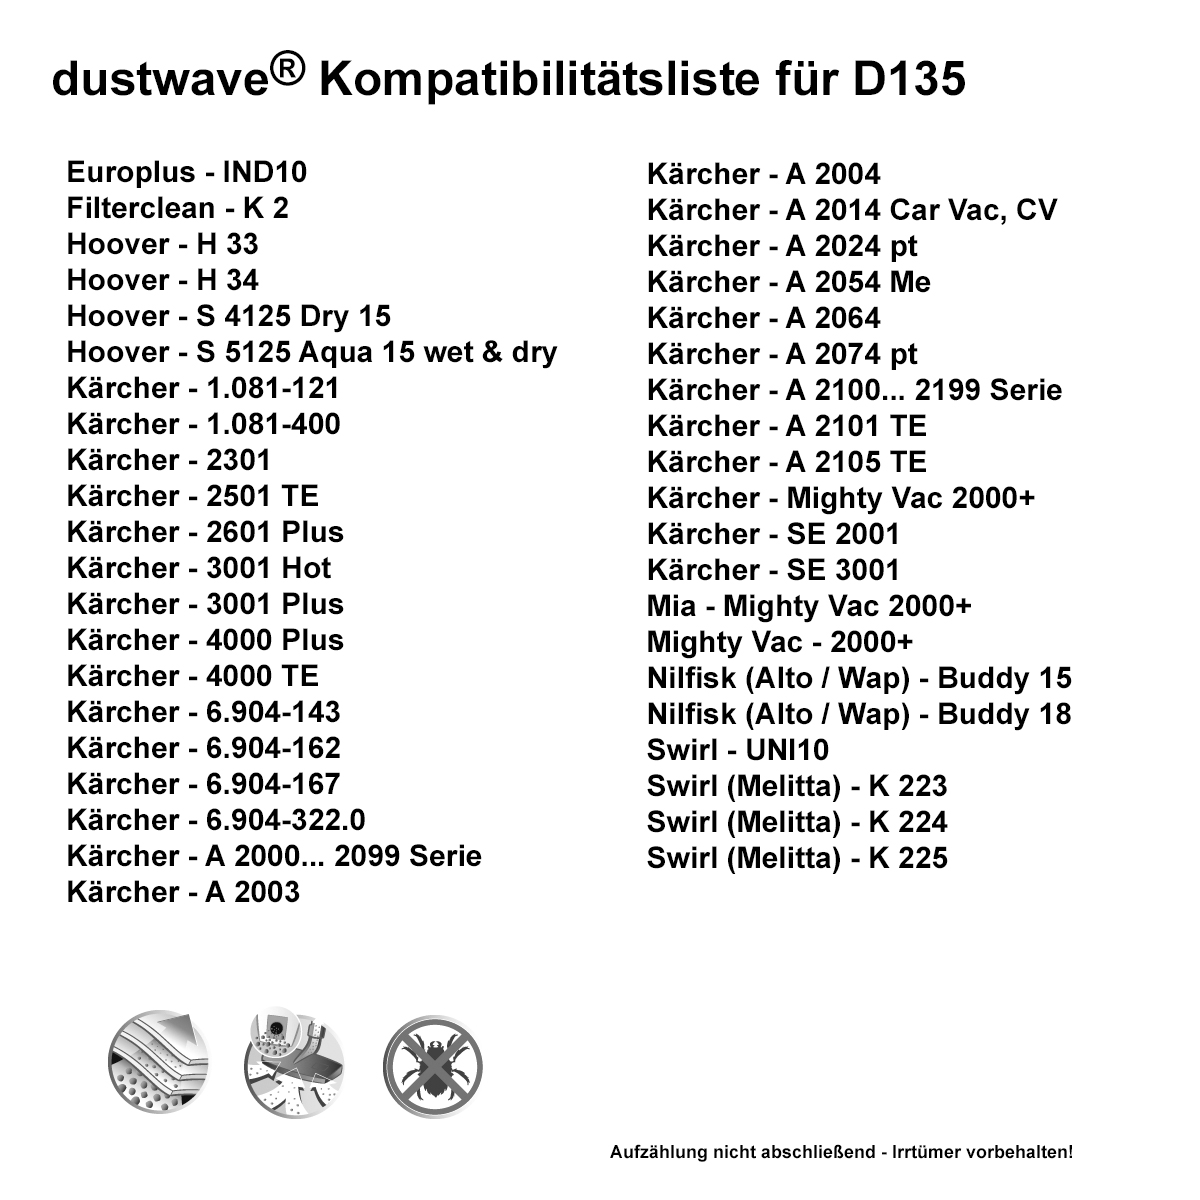 Dustwave® 40 Staubsaugerbeutel für Hoover H 33 / H33 - hocheffizient, mehrlagiges Mikrovlies mit Hygieneverschluss - Made in Germany